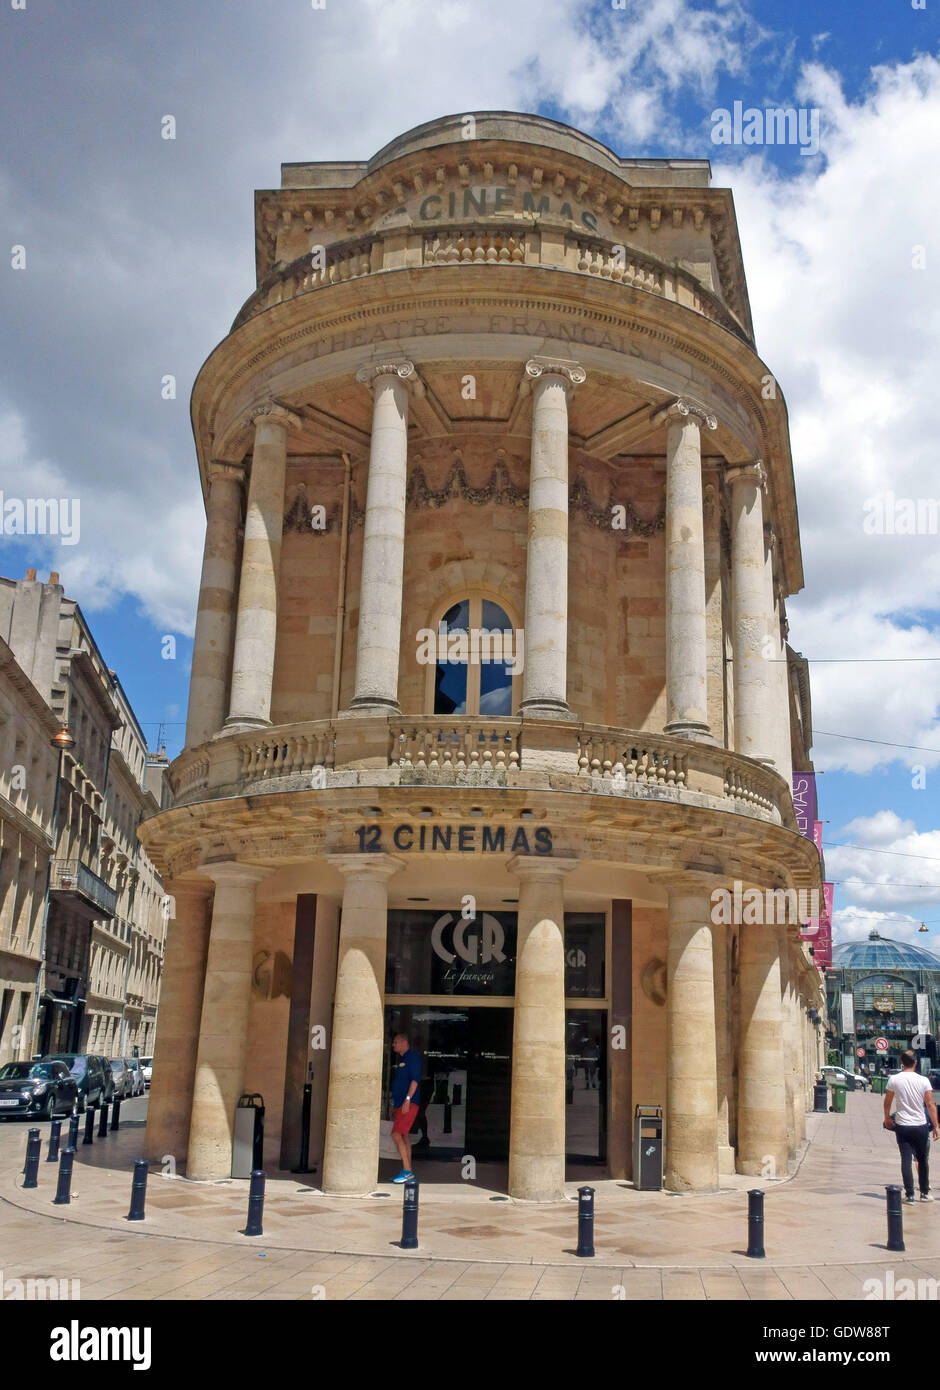 12 Pantalla de cine en la CGR teatro viejo edificio en Bordeaux, Francia Foto de stock